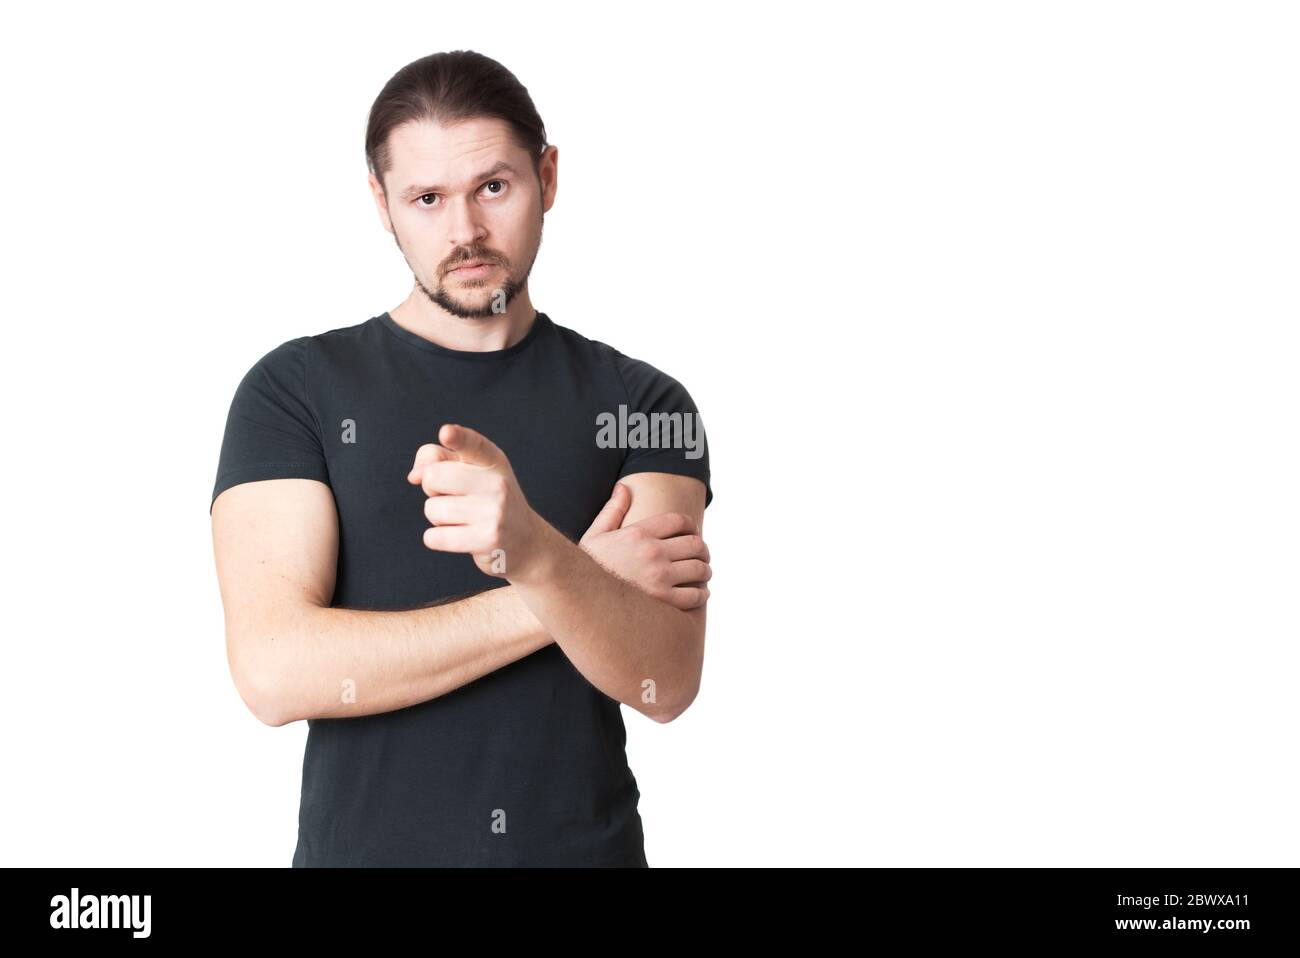 Der junge ernsthafte Mann zeigt mit dem Finger vor sich selbst. Isoliert auf weißem Hintergrund. Stockfoto